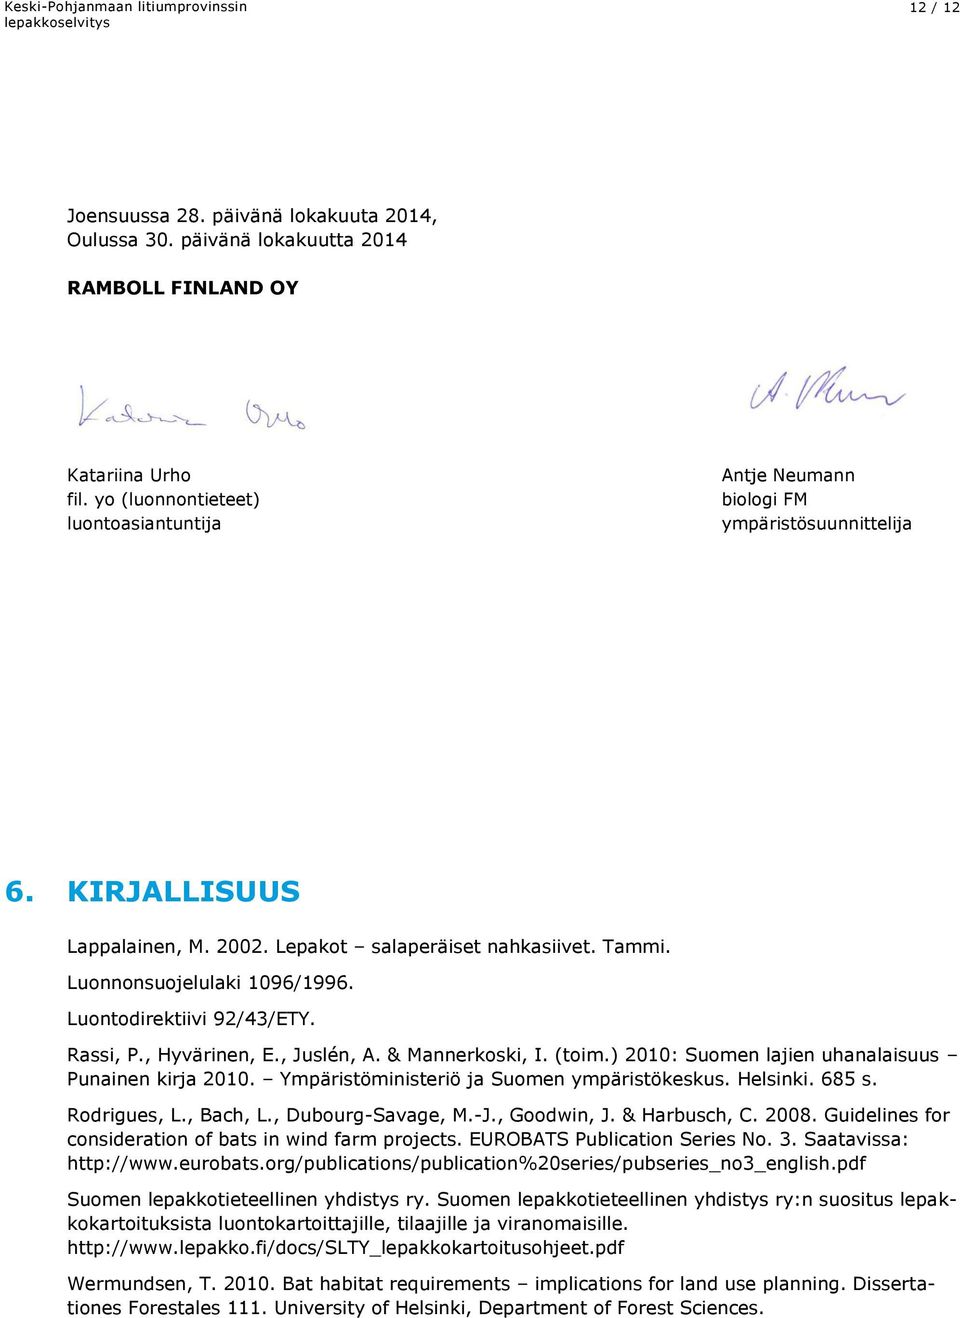 Luontodirektiivi 92/43/ETY. Rassi, P., Hyvärinen, E., Juslén, A. & Mannerkoski, I. (toim.) 2010: Suomen lajien uhanalaisuus Punainen kirja 2010. Ympäristöministeriö ja Suomen ympäristökeskus.